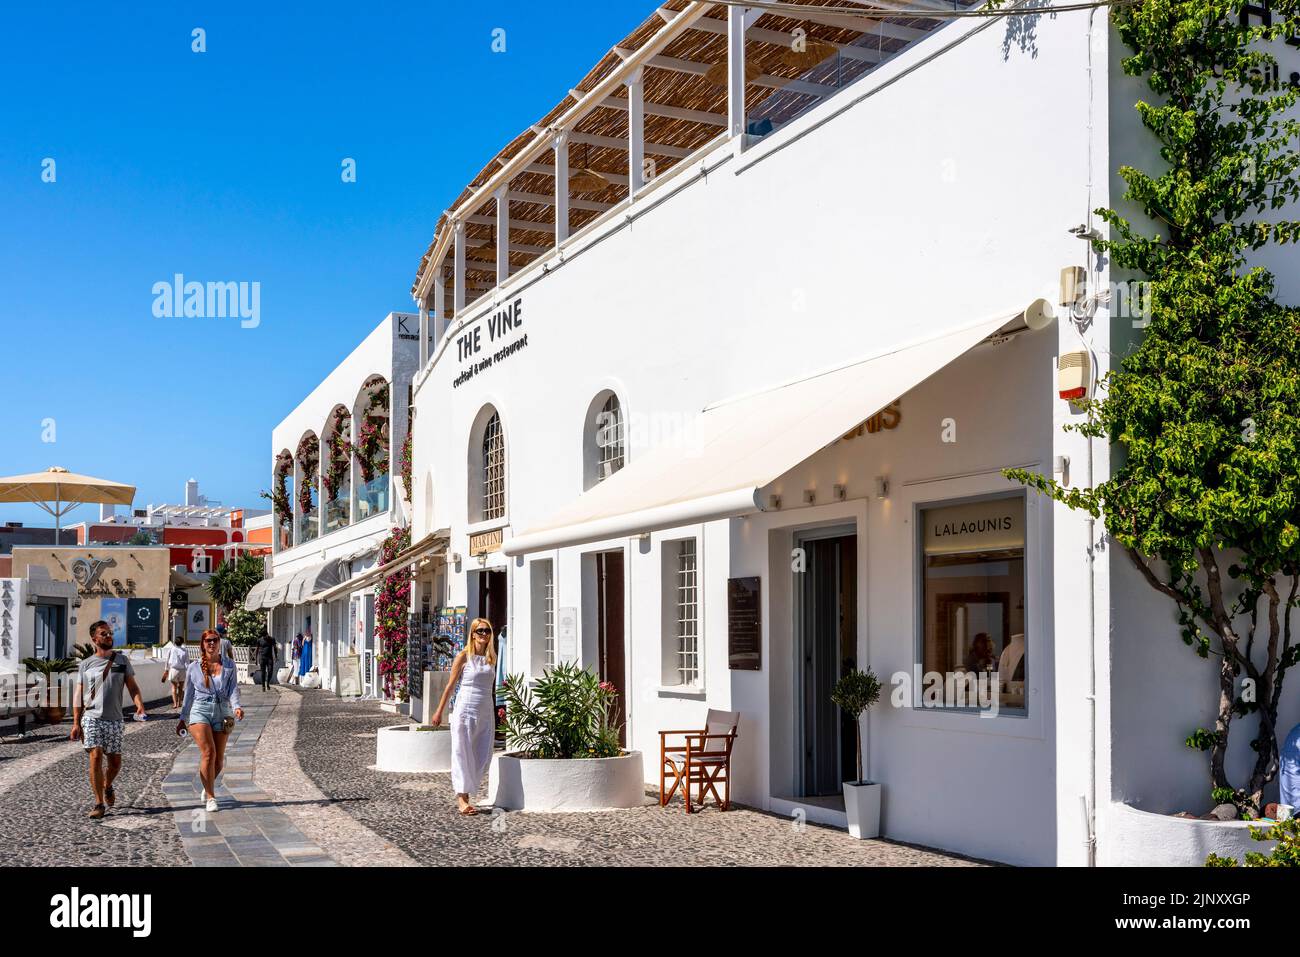 Touristes/visiteurs sur la place principale de Thira, Santorini, Iles grecques, Grèce. Banque D'Images